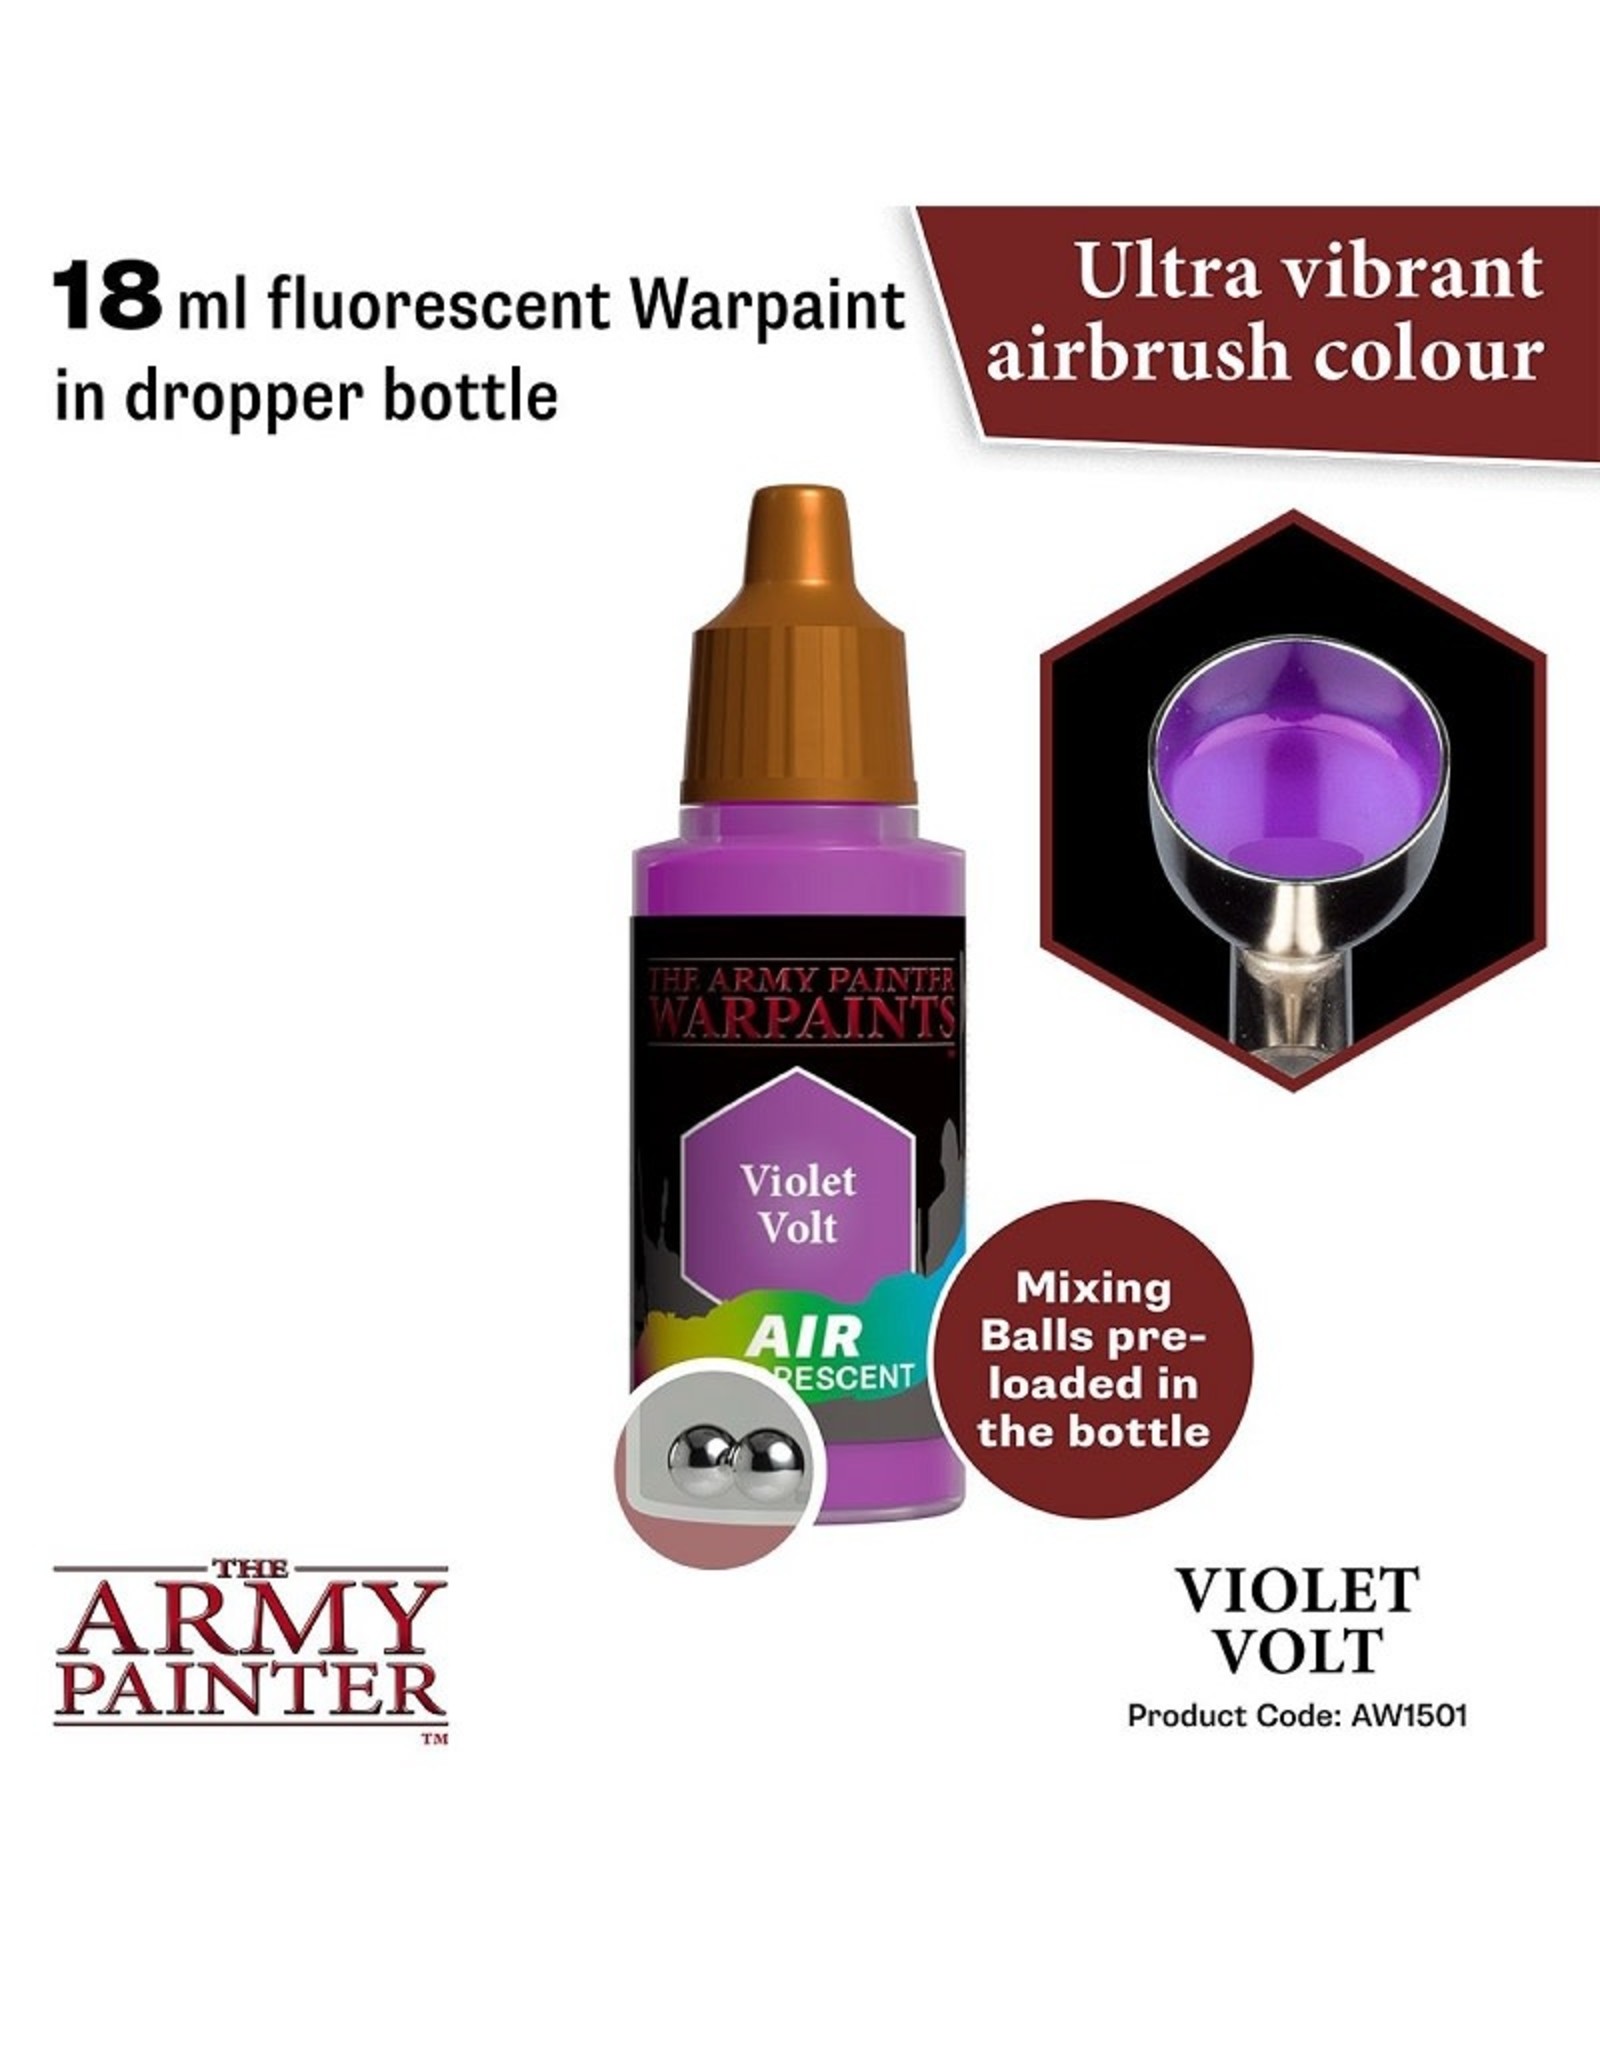 The Army Painter Warpaint Air: Flourescent - Violet Volt (18ml)